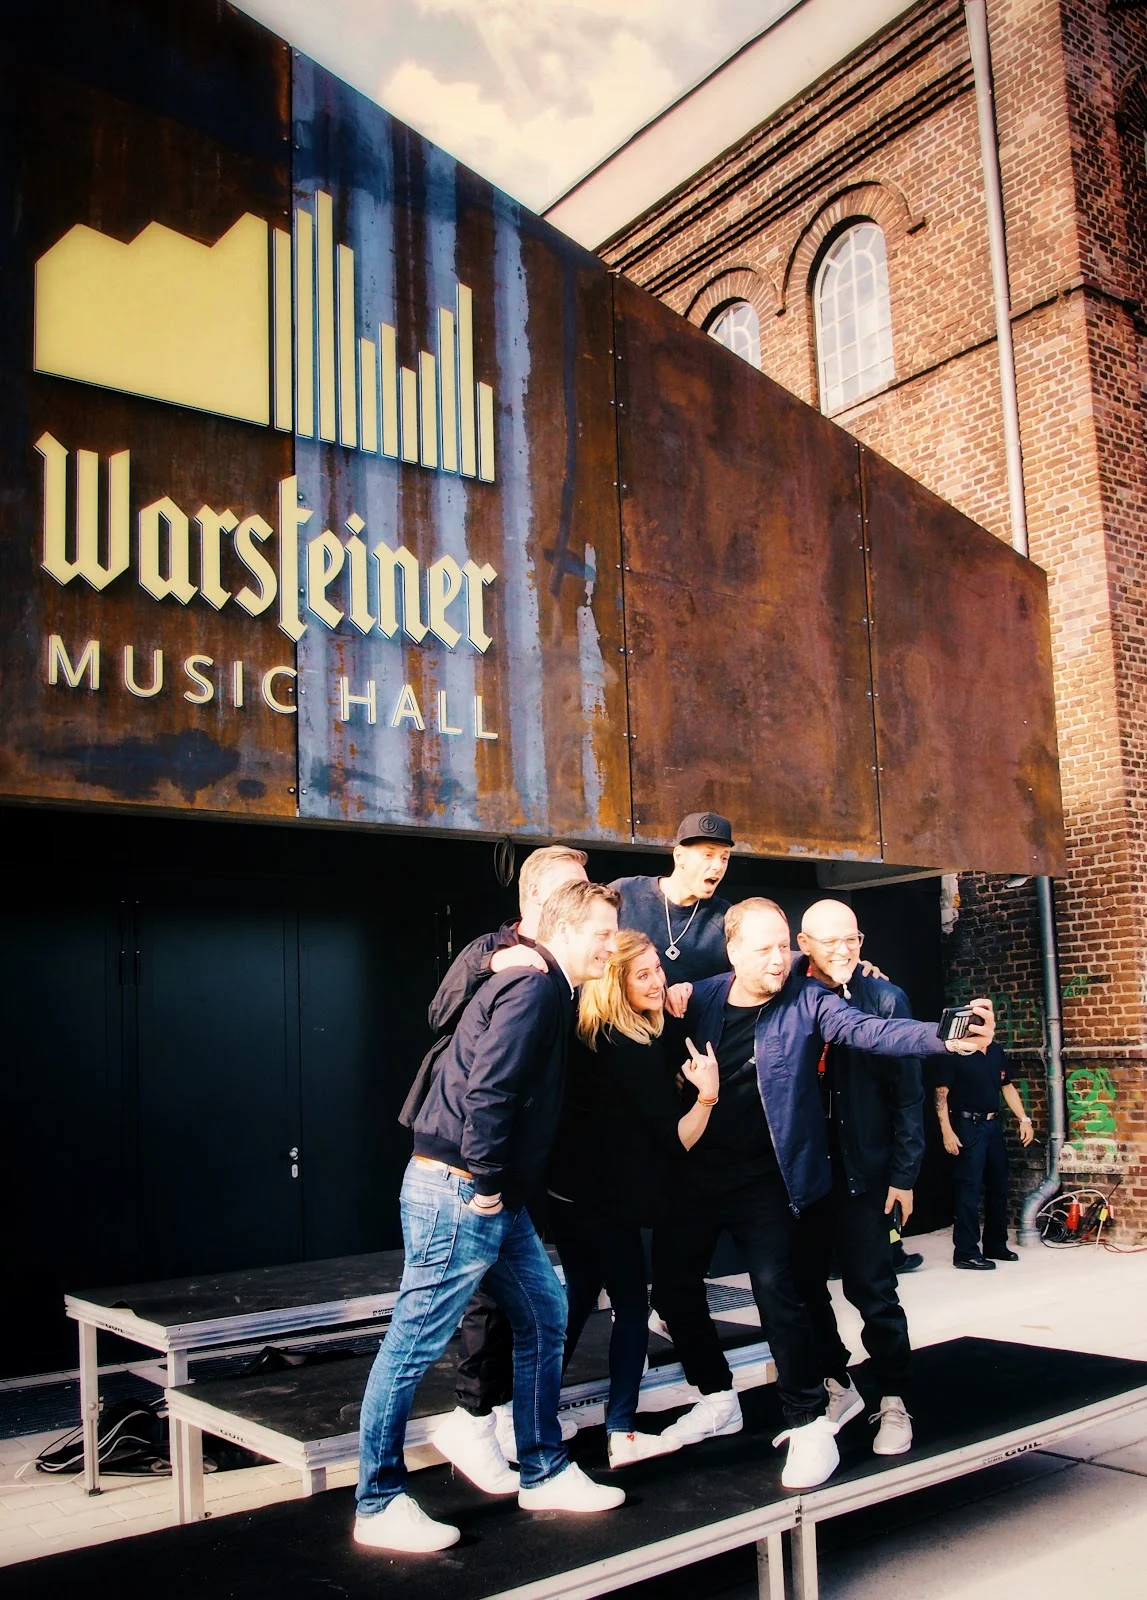 Atomlabor Blog on Tour in der Warsteiner Music Hall in Dortmund - Die Fantastischen Vier mit Catharina Cramer und Alexander Richter vor dem Eingang der Halle auf einem Podest beim Selfie